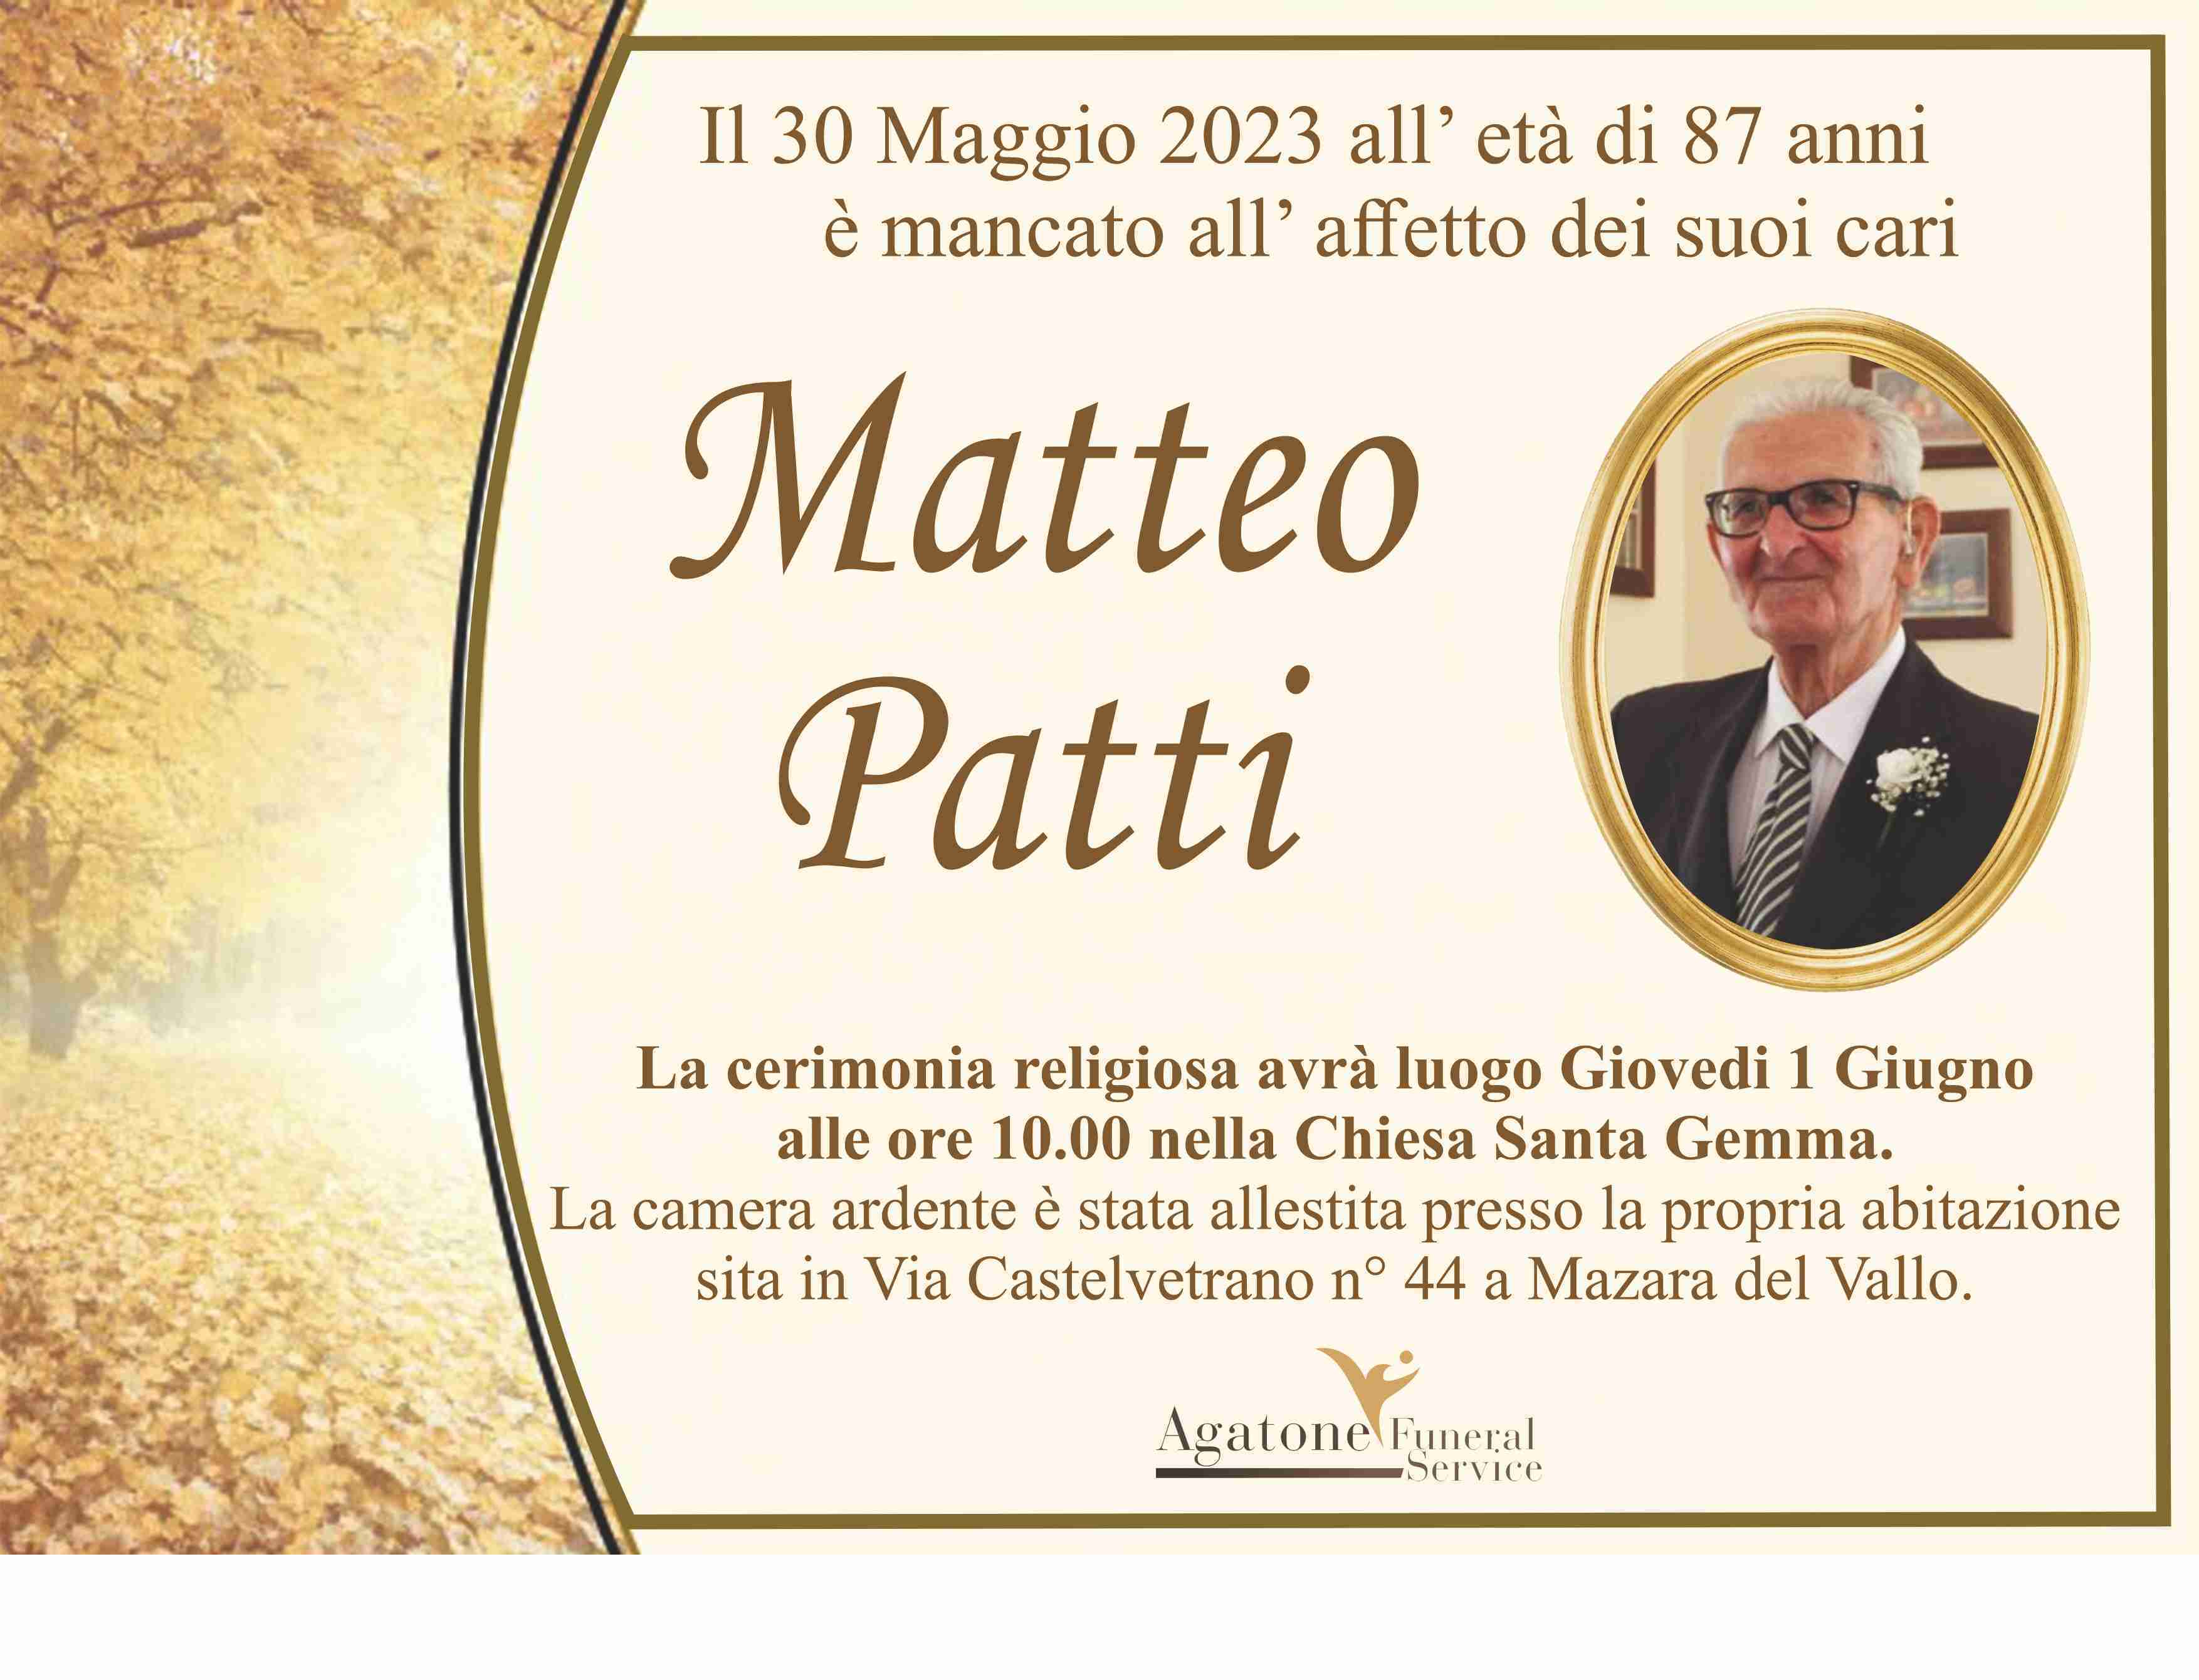 Matteo Patti